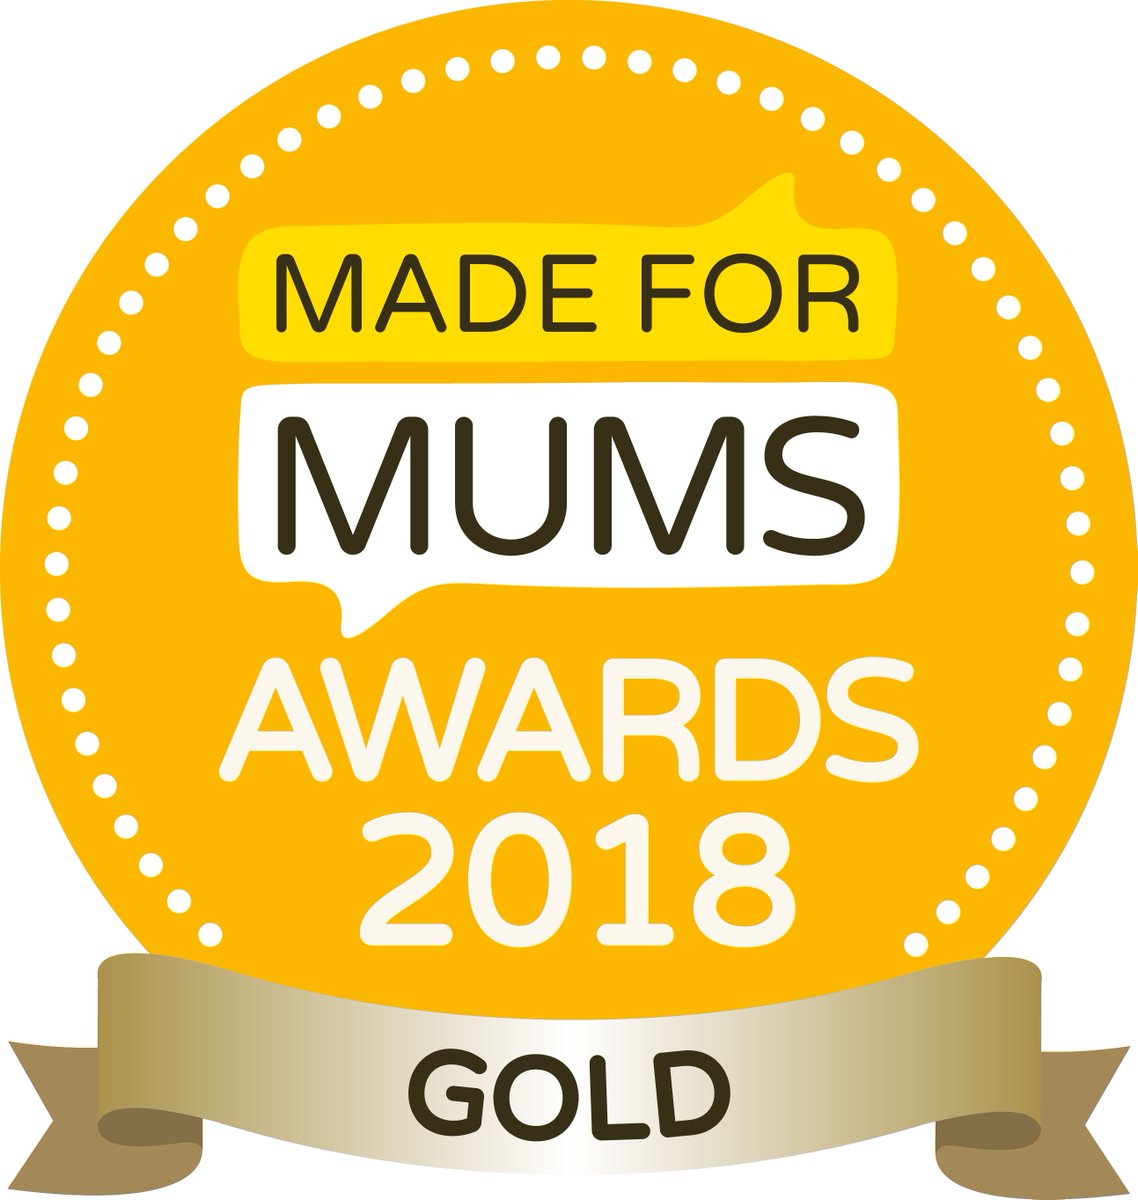 Made for mum award winners 2018